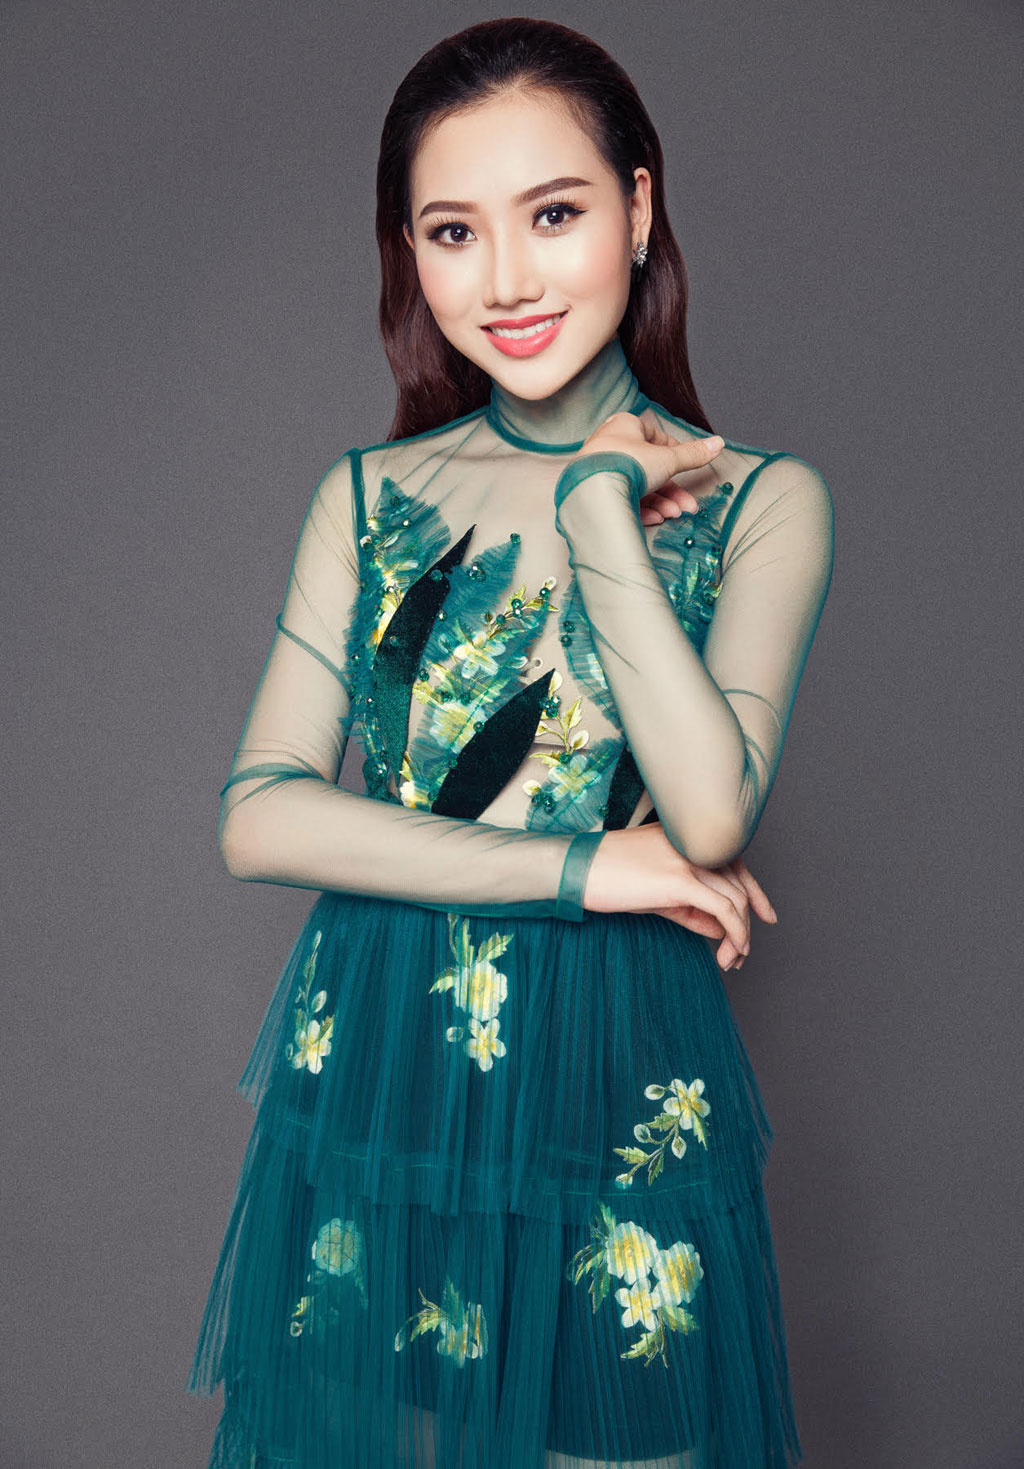 Hoàng Thu Thảo được cấp phép tham dự Miss Asia Pacific International 2016 2